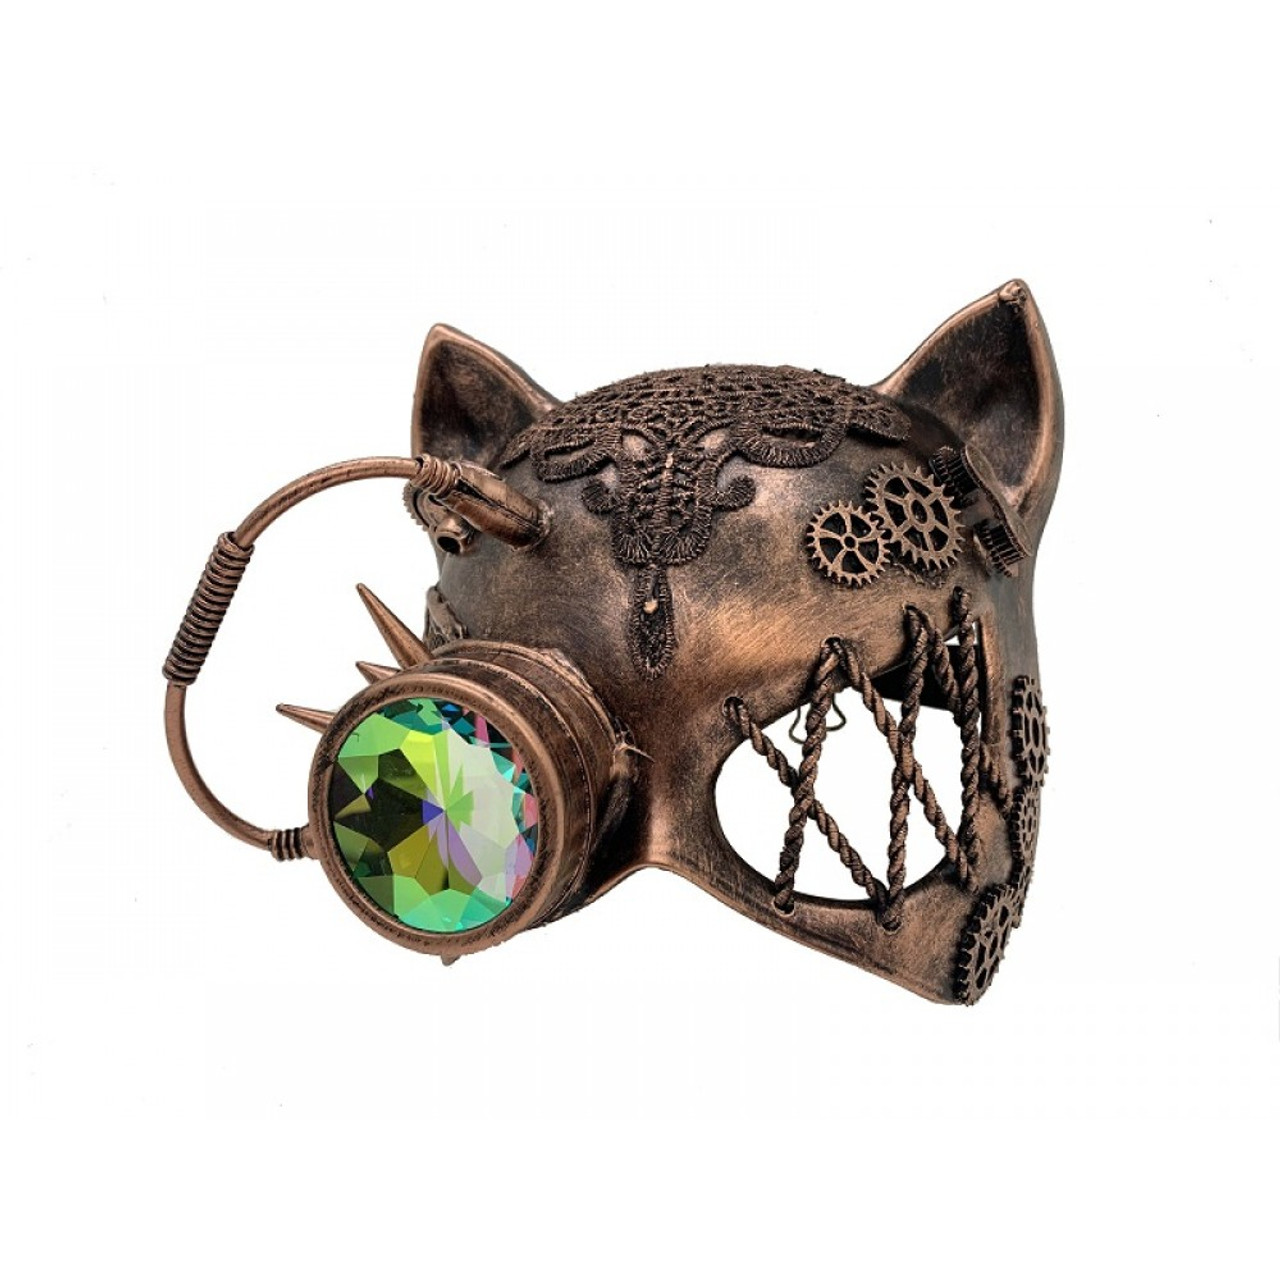 DIY Blank Cat Mask Sexy Cat Mask, Gatto Mask, Venetian Gatto Masks